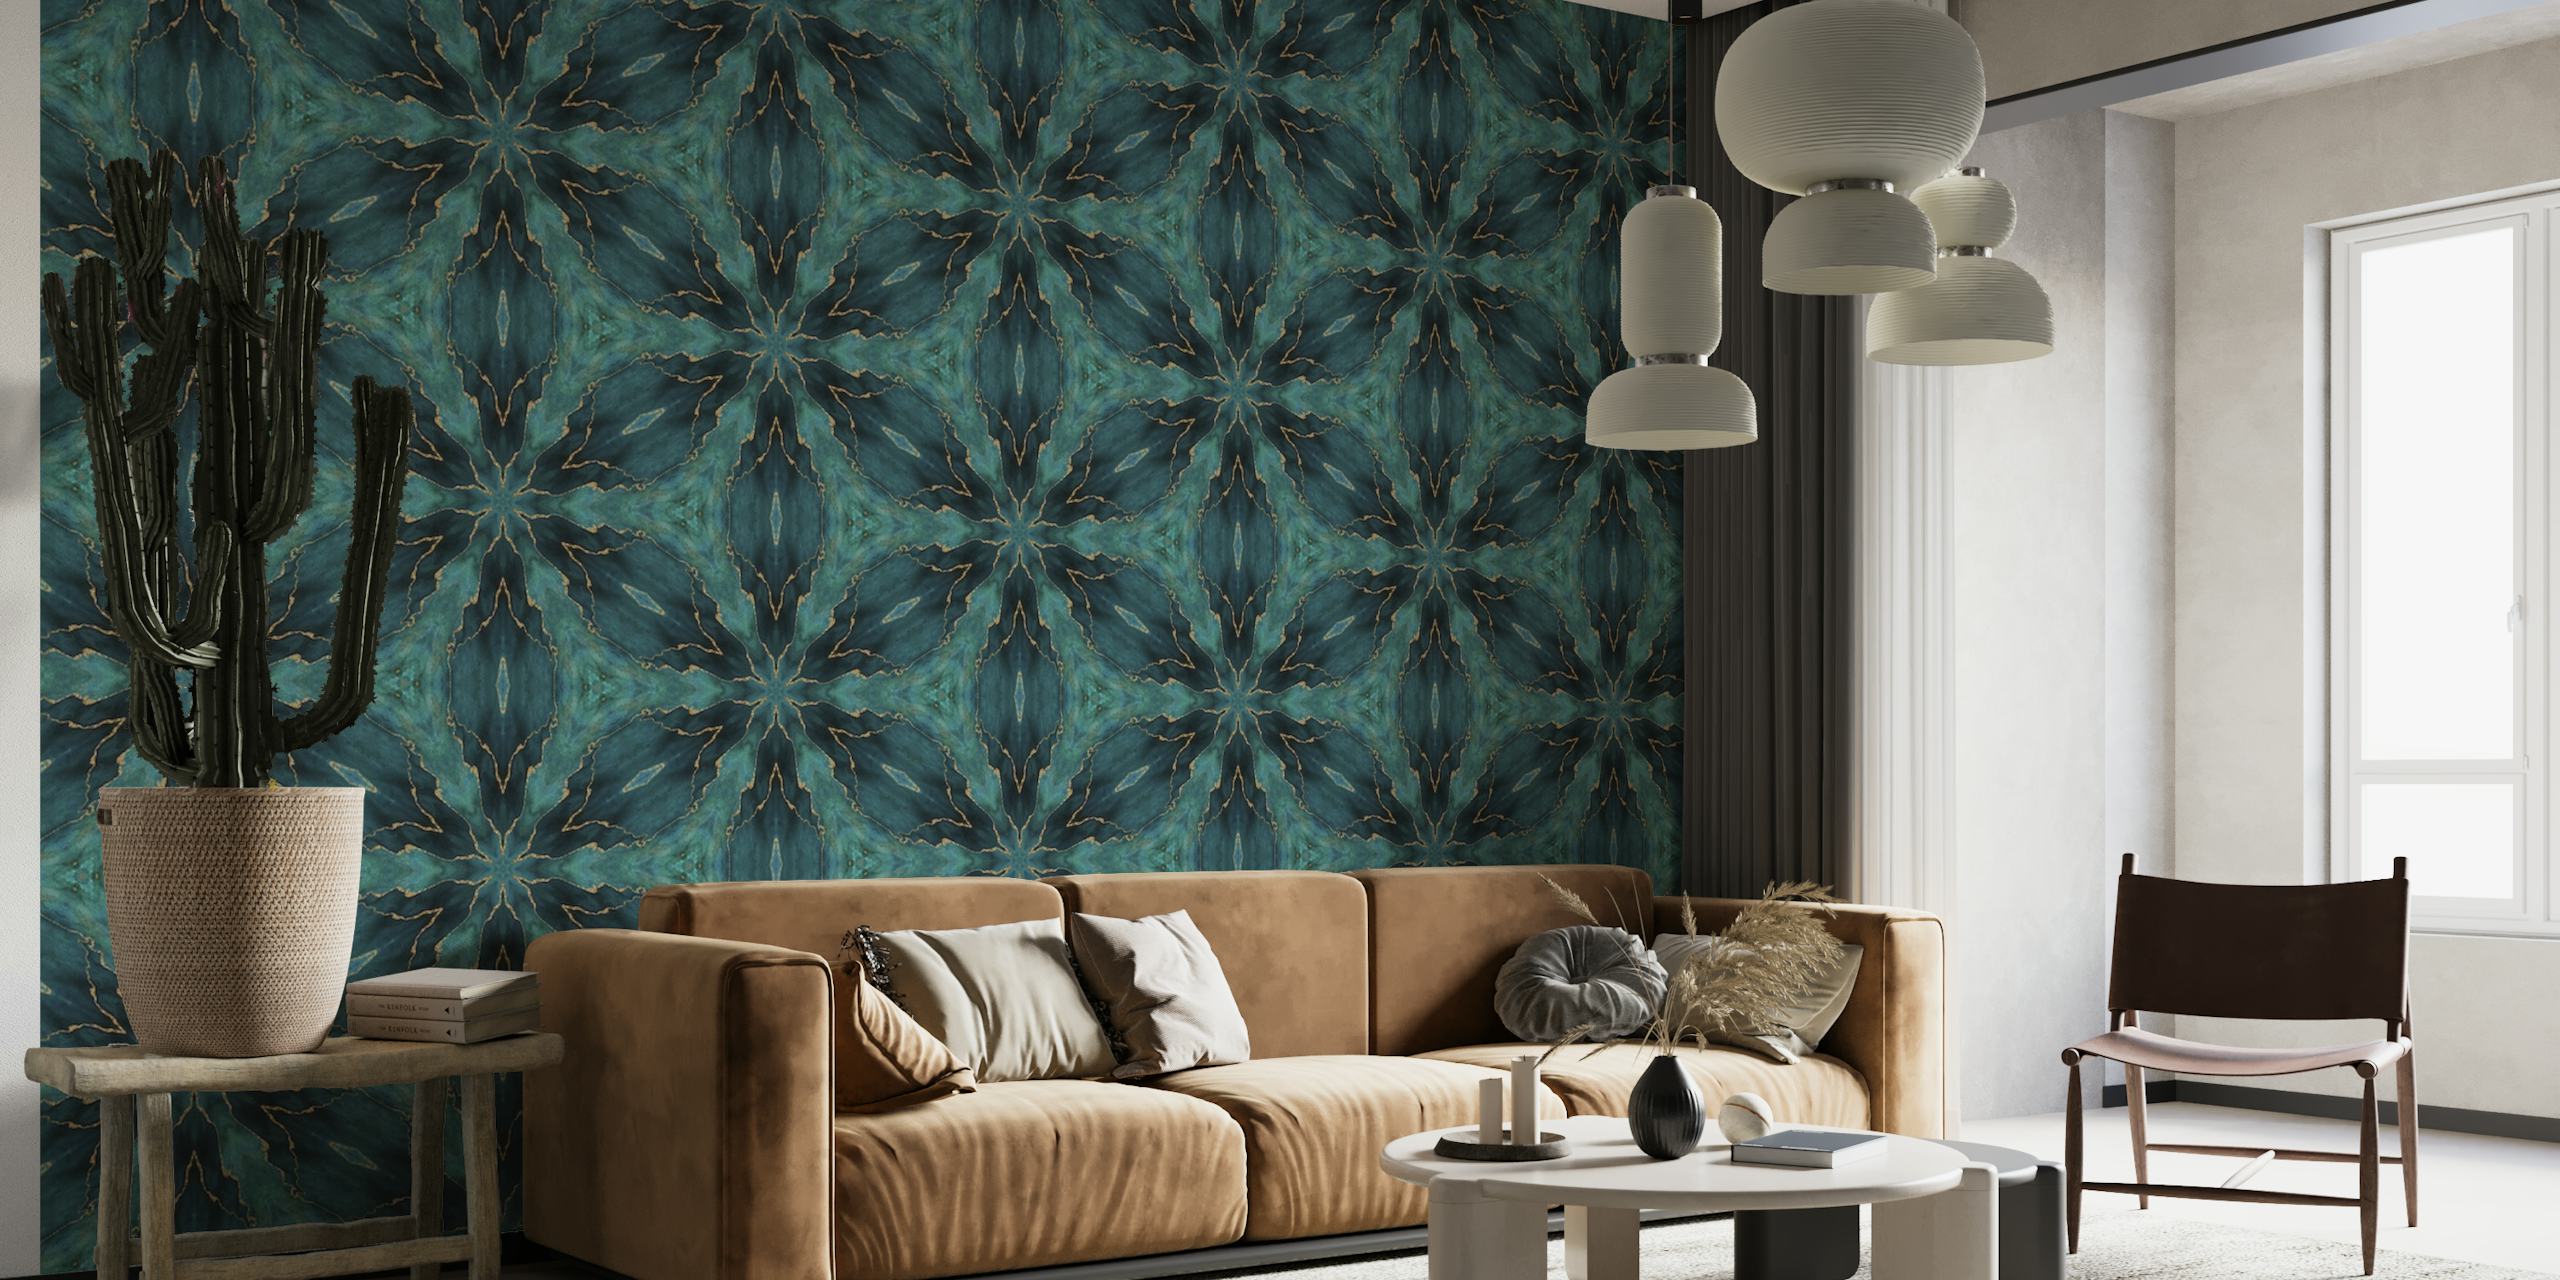 Fotomural vinílico de parede elegante com padrão de azulejo de mármore turquesa e dourado